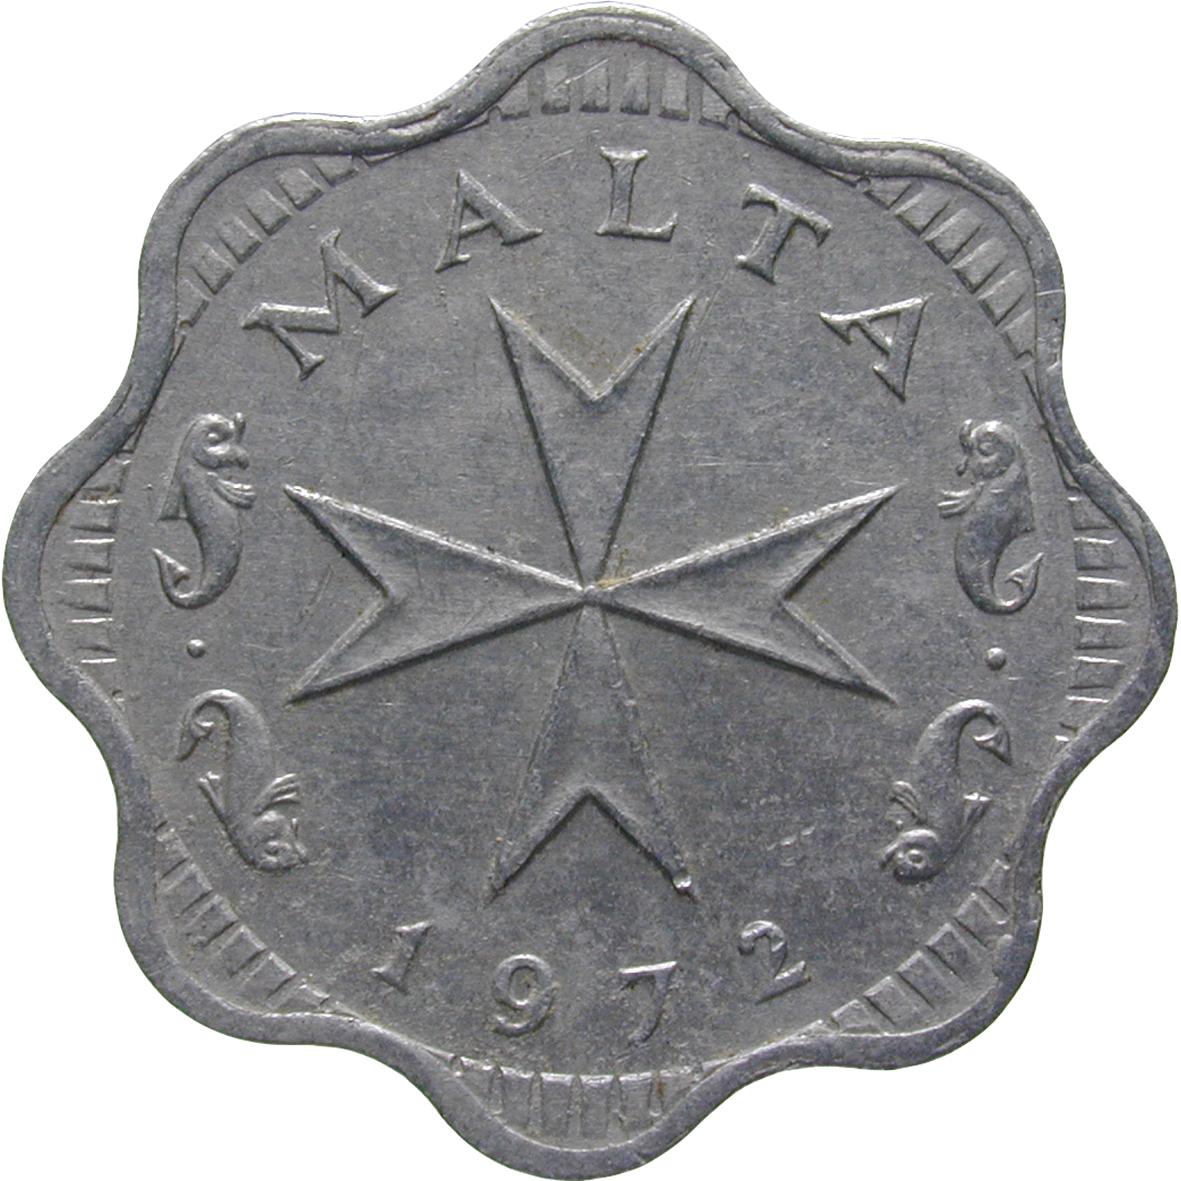 Republic of Malta, 2 Mils 1972 (obverse)